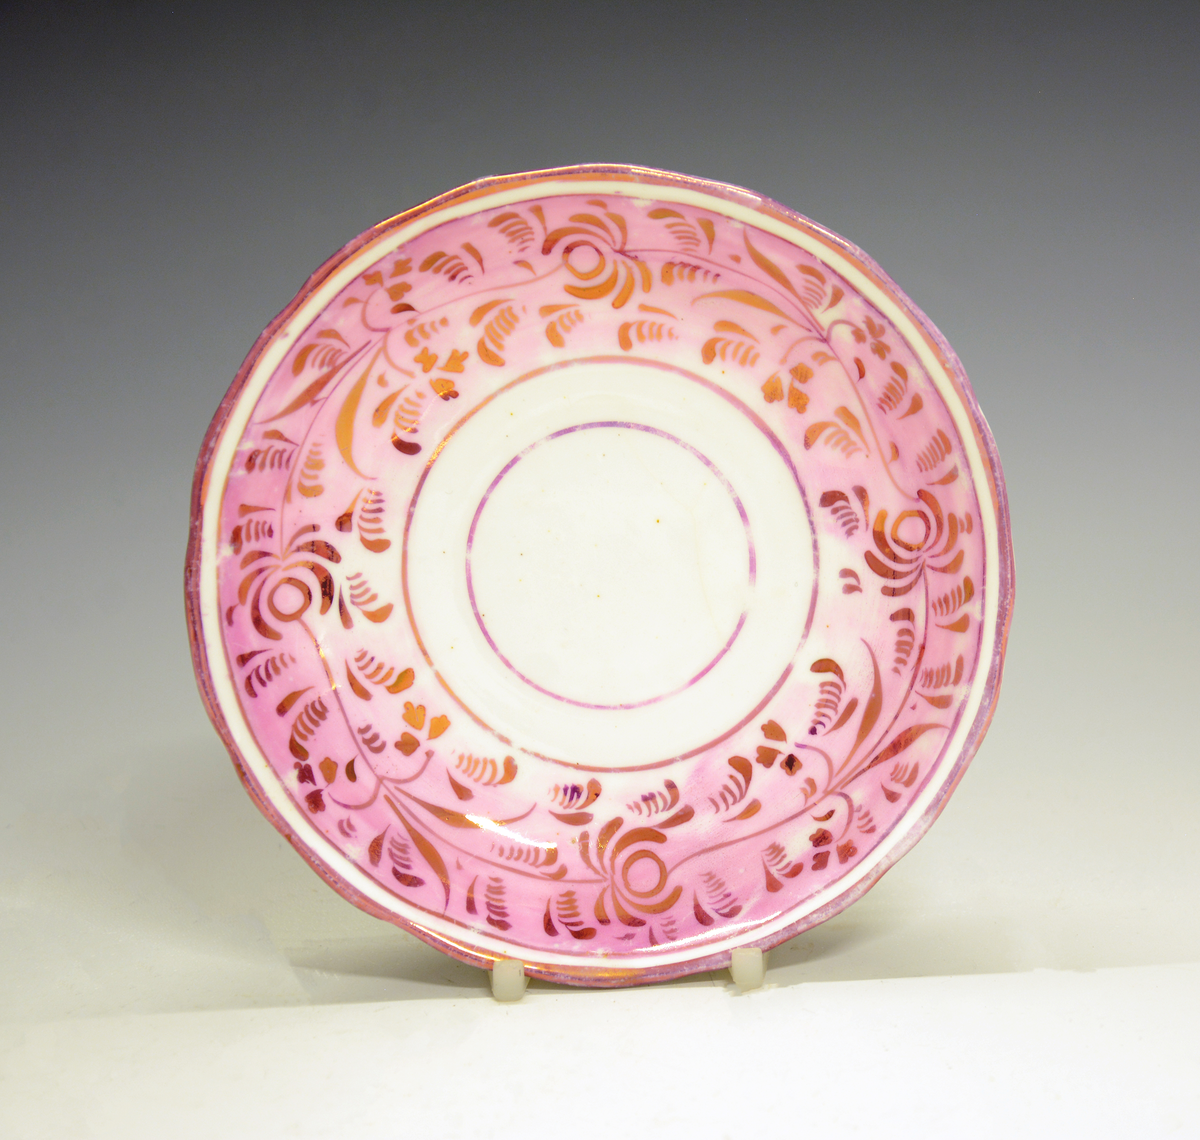 Fra protokollen: Tekopp med skål. Dekor i form av en frise med lys rød bunnfarge og påmalte blomsterranker i gull. Uten merke. Engelsk luster-keramikk  (lustreware/lusterware).